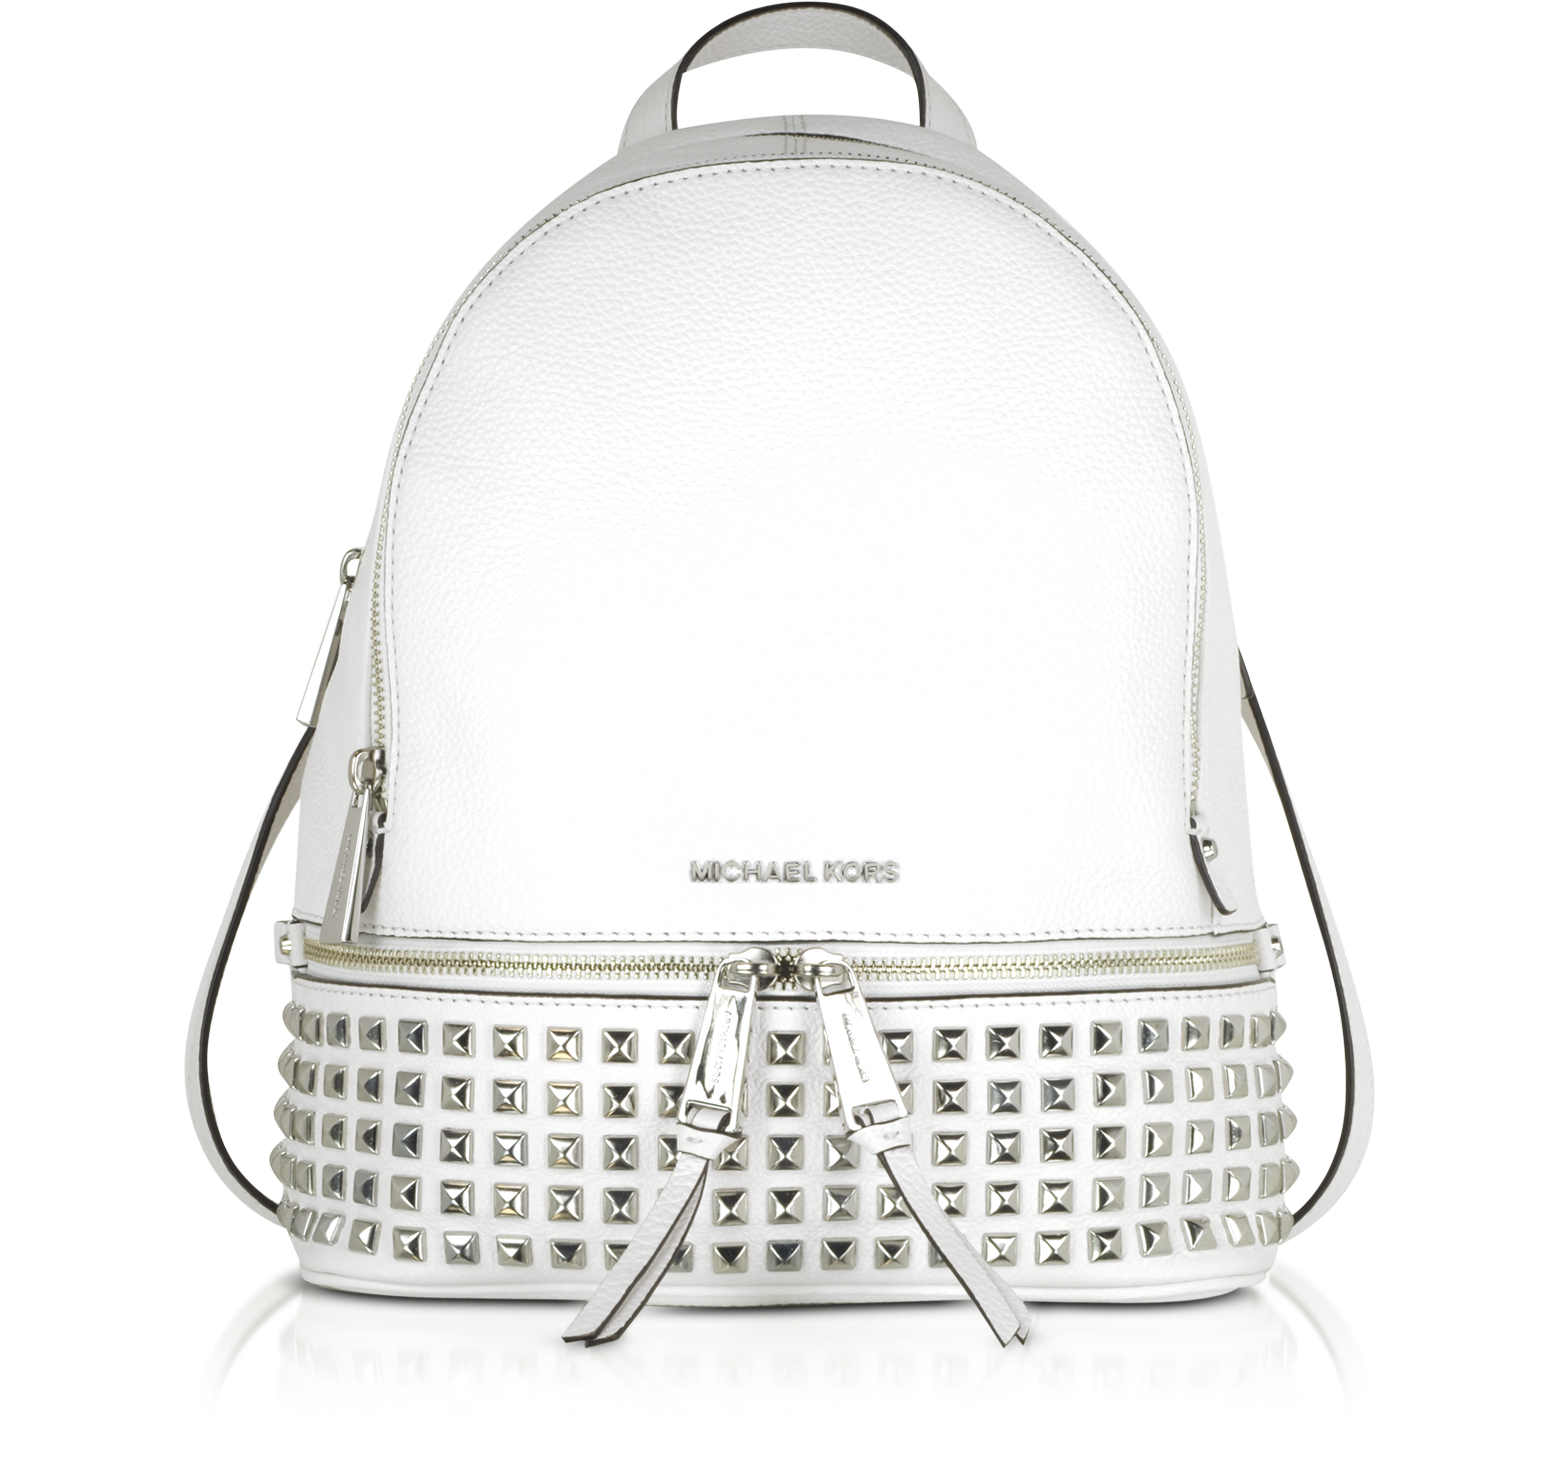 michael kors white studded backpack